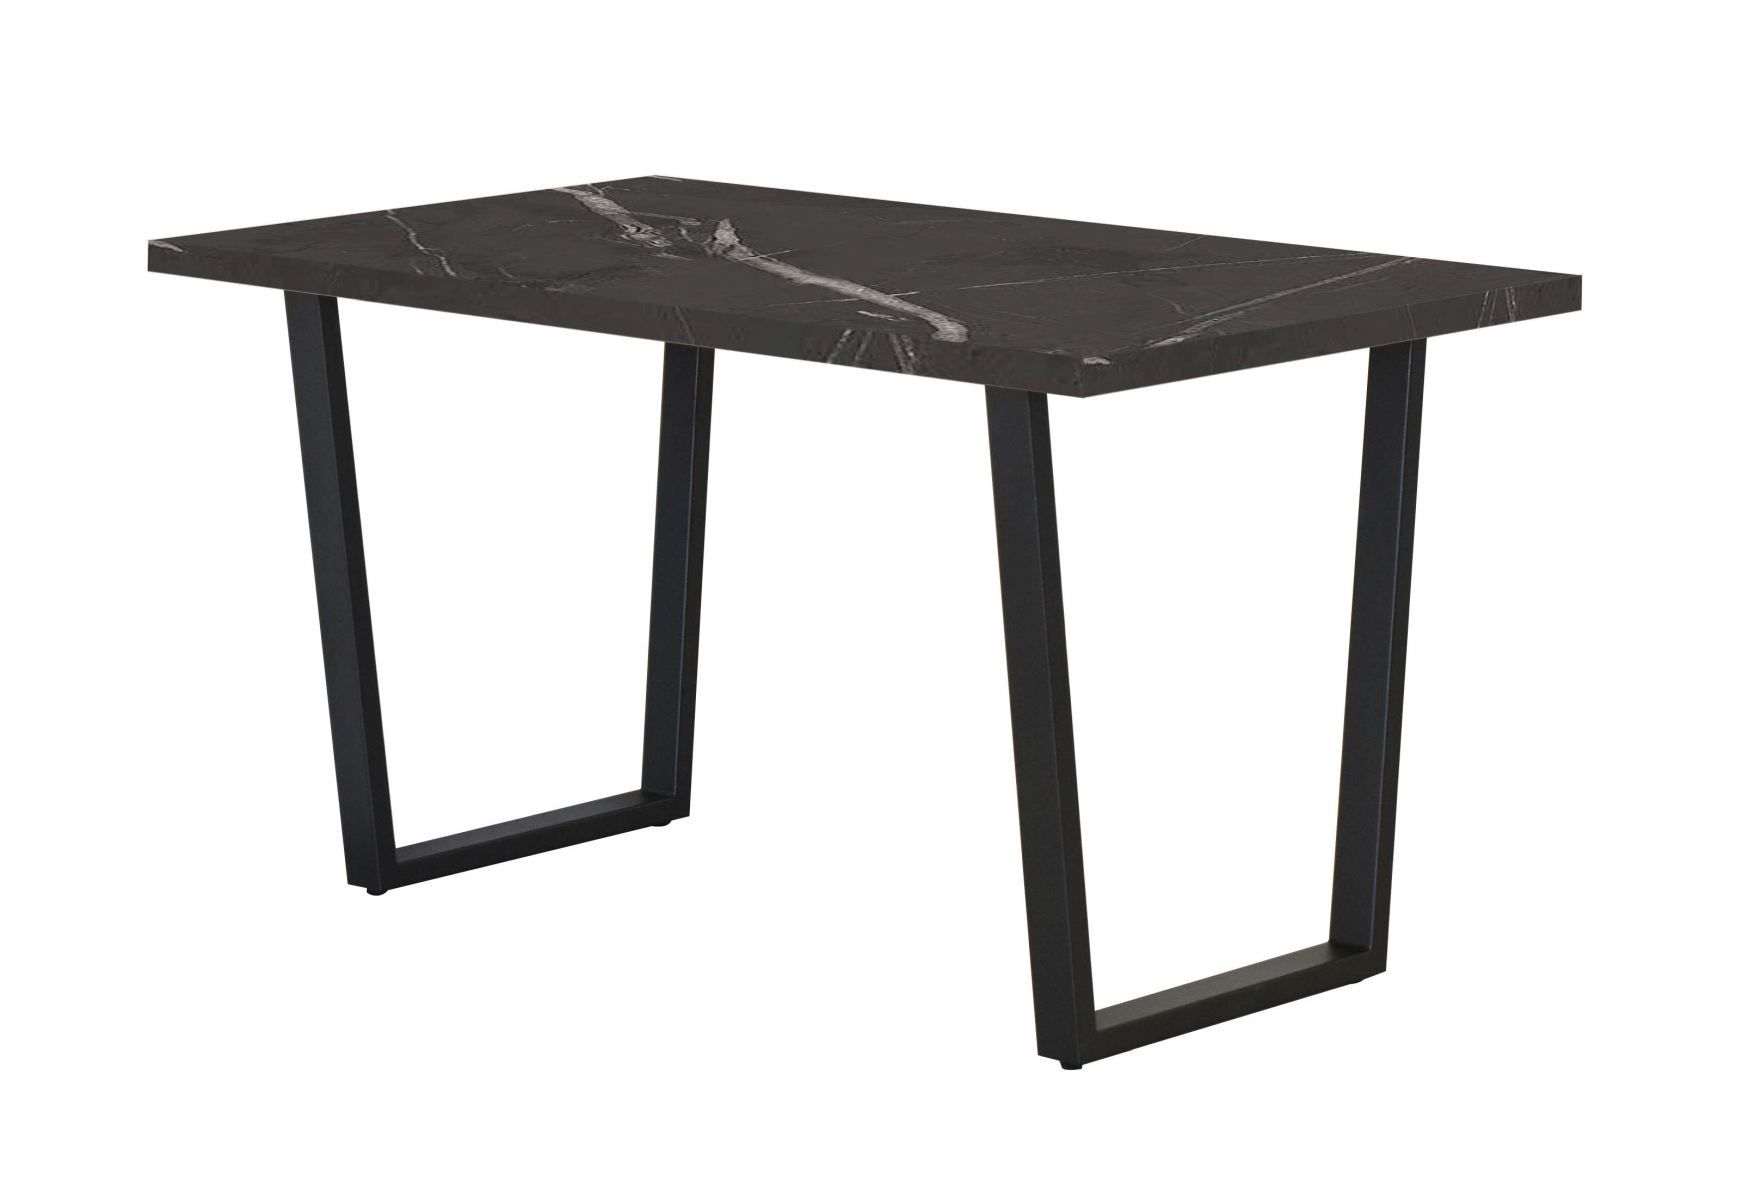 Table de salle à manger Ourense 03, Couleur : Marbre noir / Noir - dimensions : 140 x 80 cm (l x p)